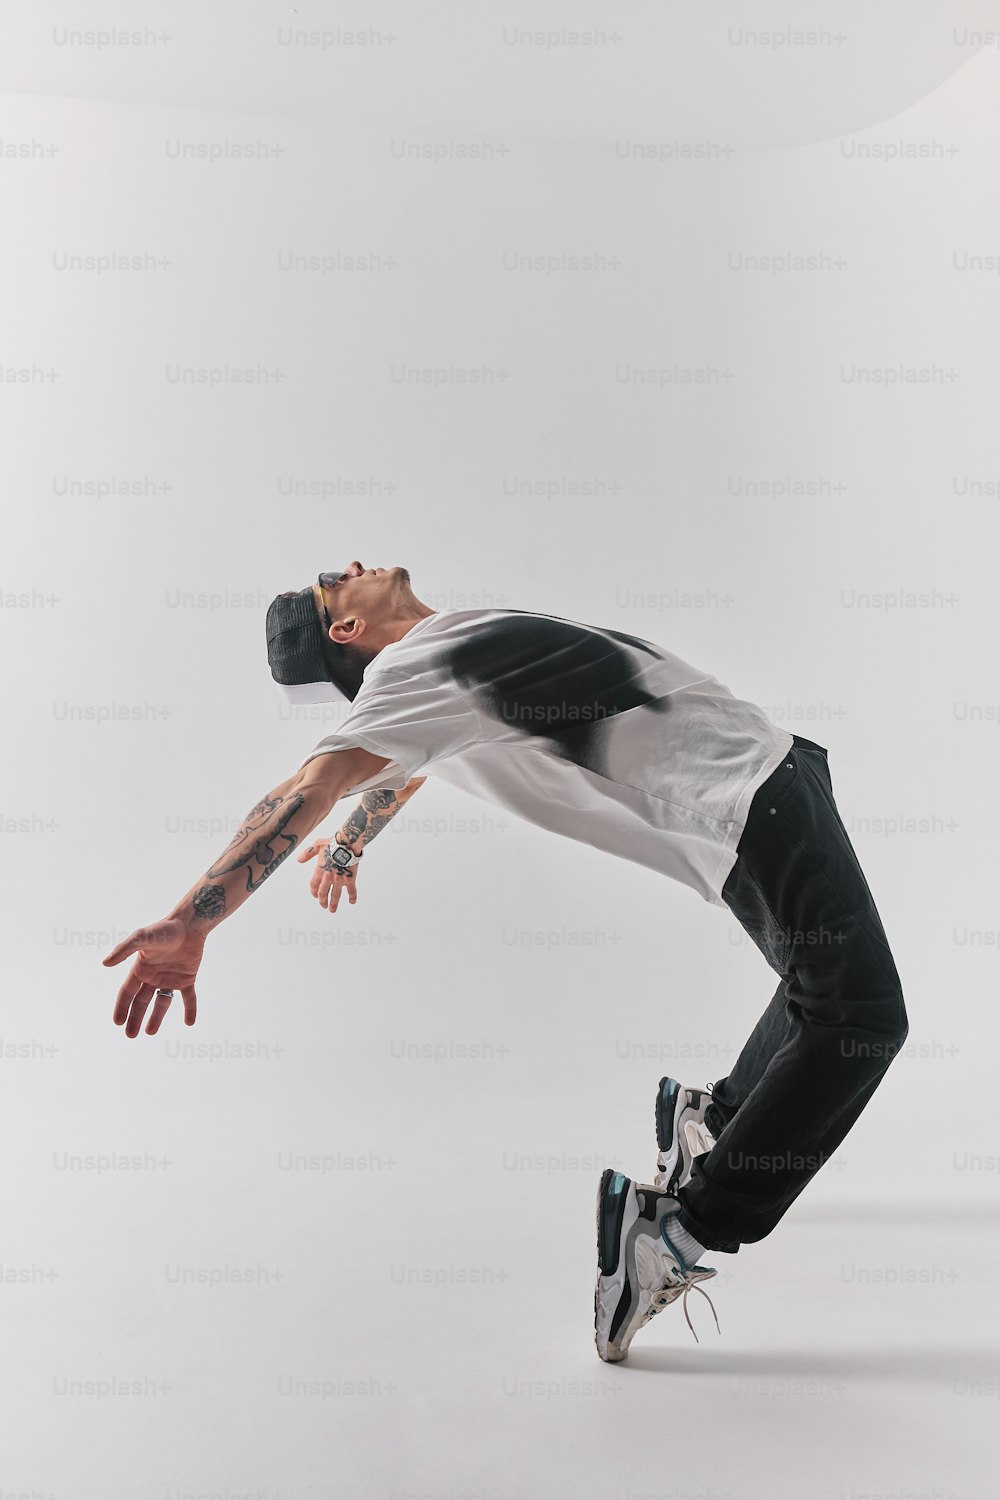 Un hombre está haciendo un truco en una patineta